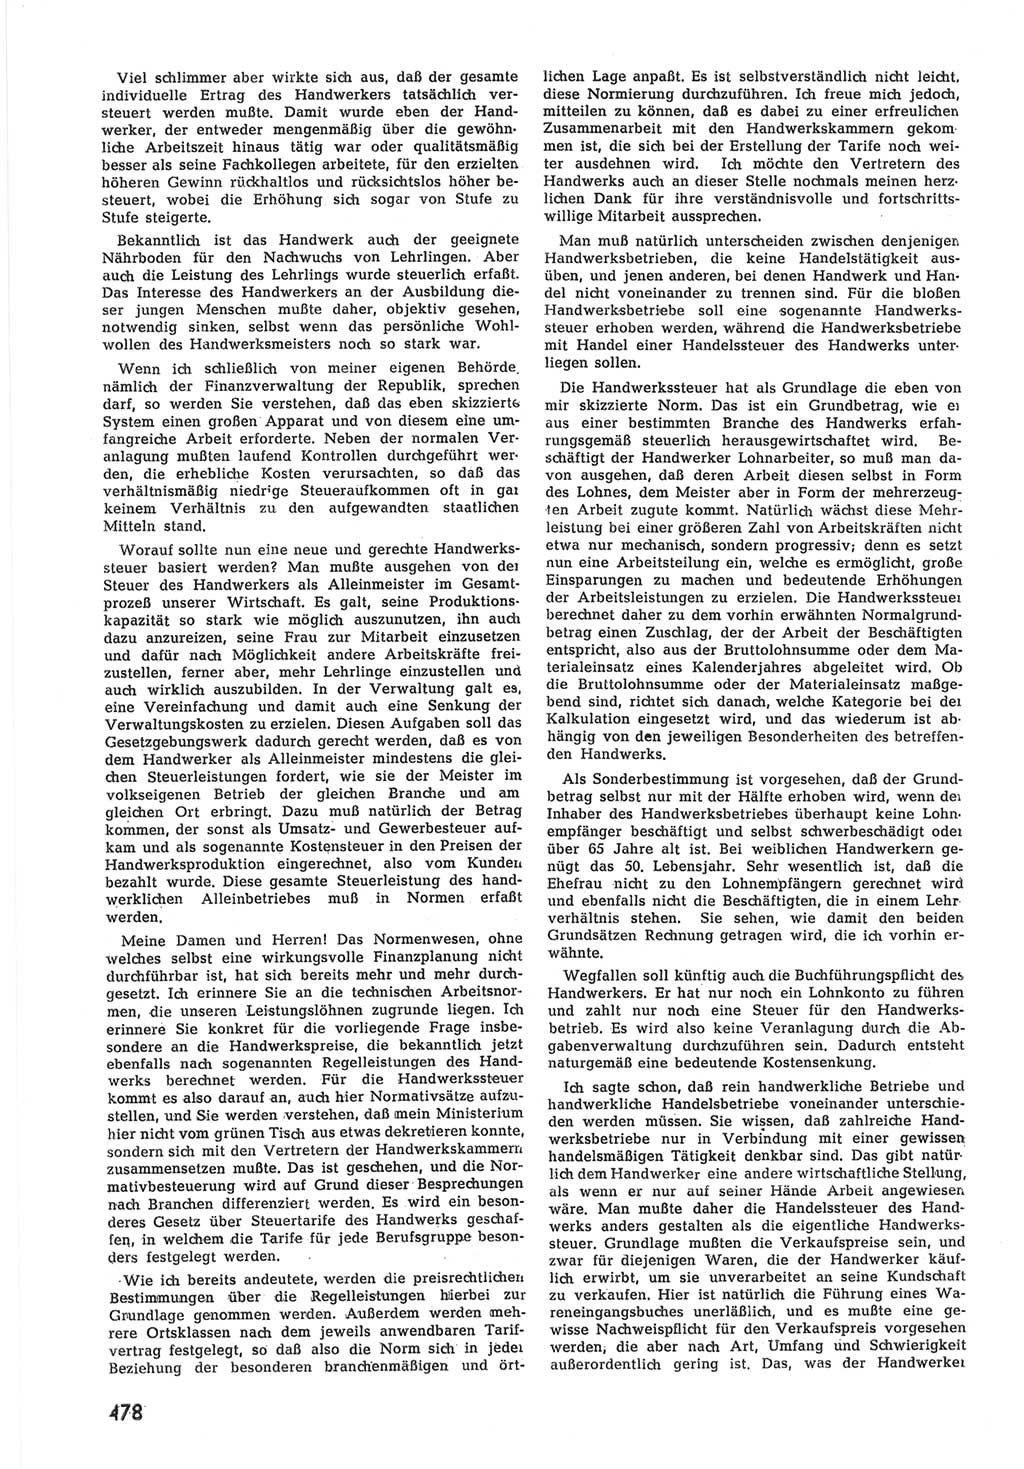 Provisorische Volkskammer (VK) der Deutschen Demokratischen Republik (DDR) 1949-1950, Dokument 496 (Prov. VK DDR 1949-1950, Dok. 496)